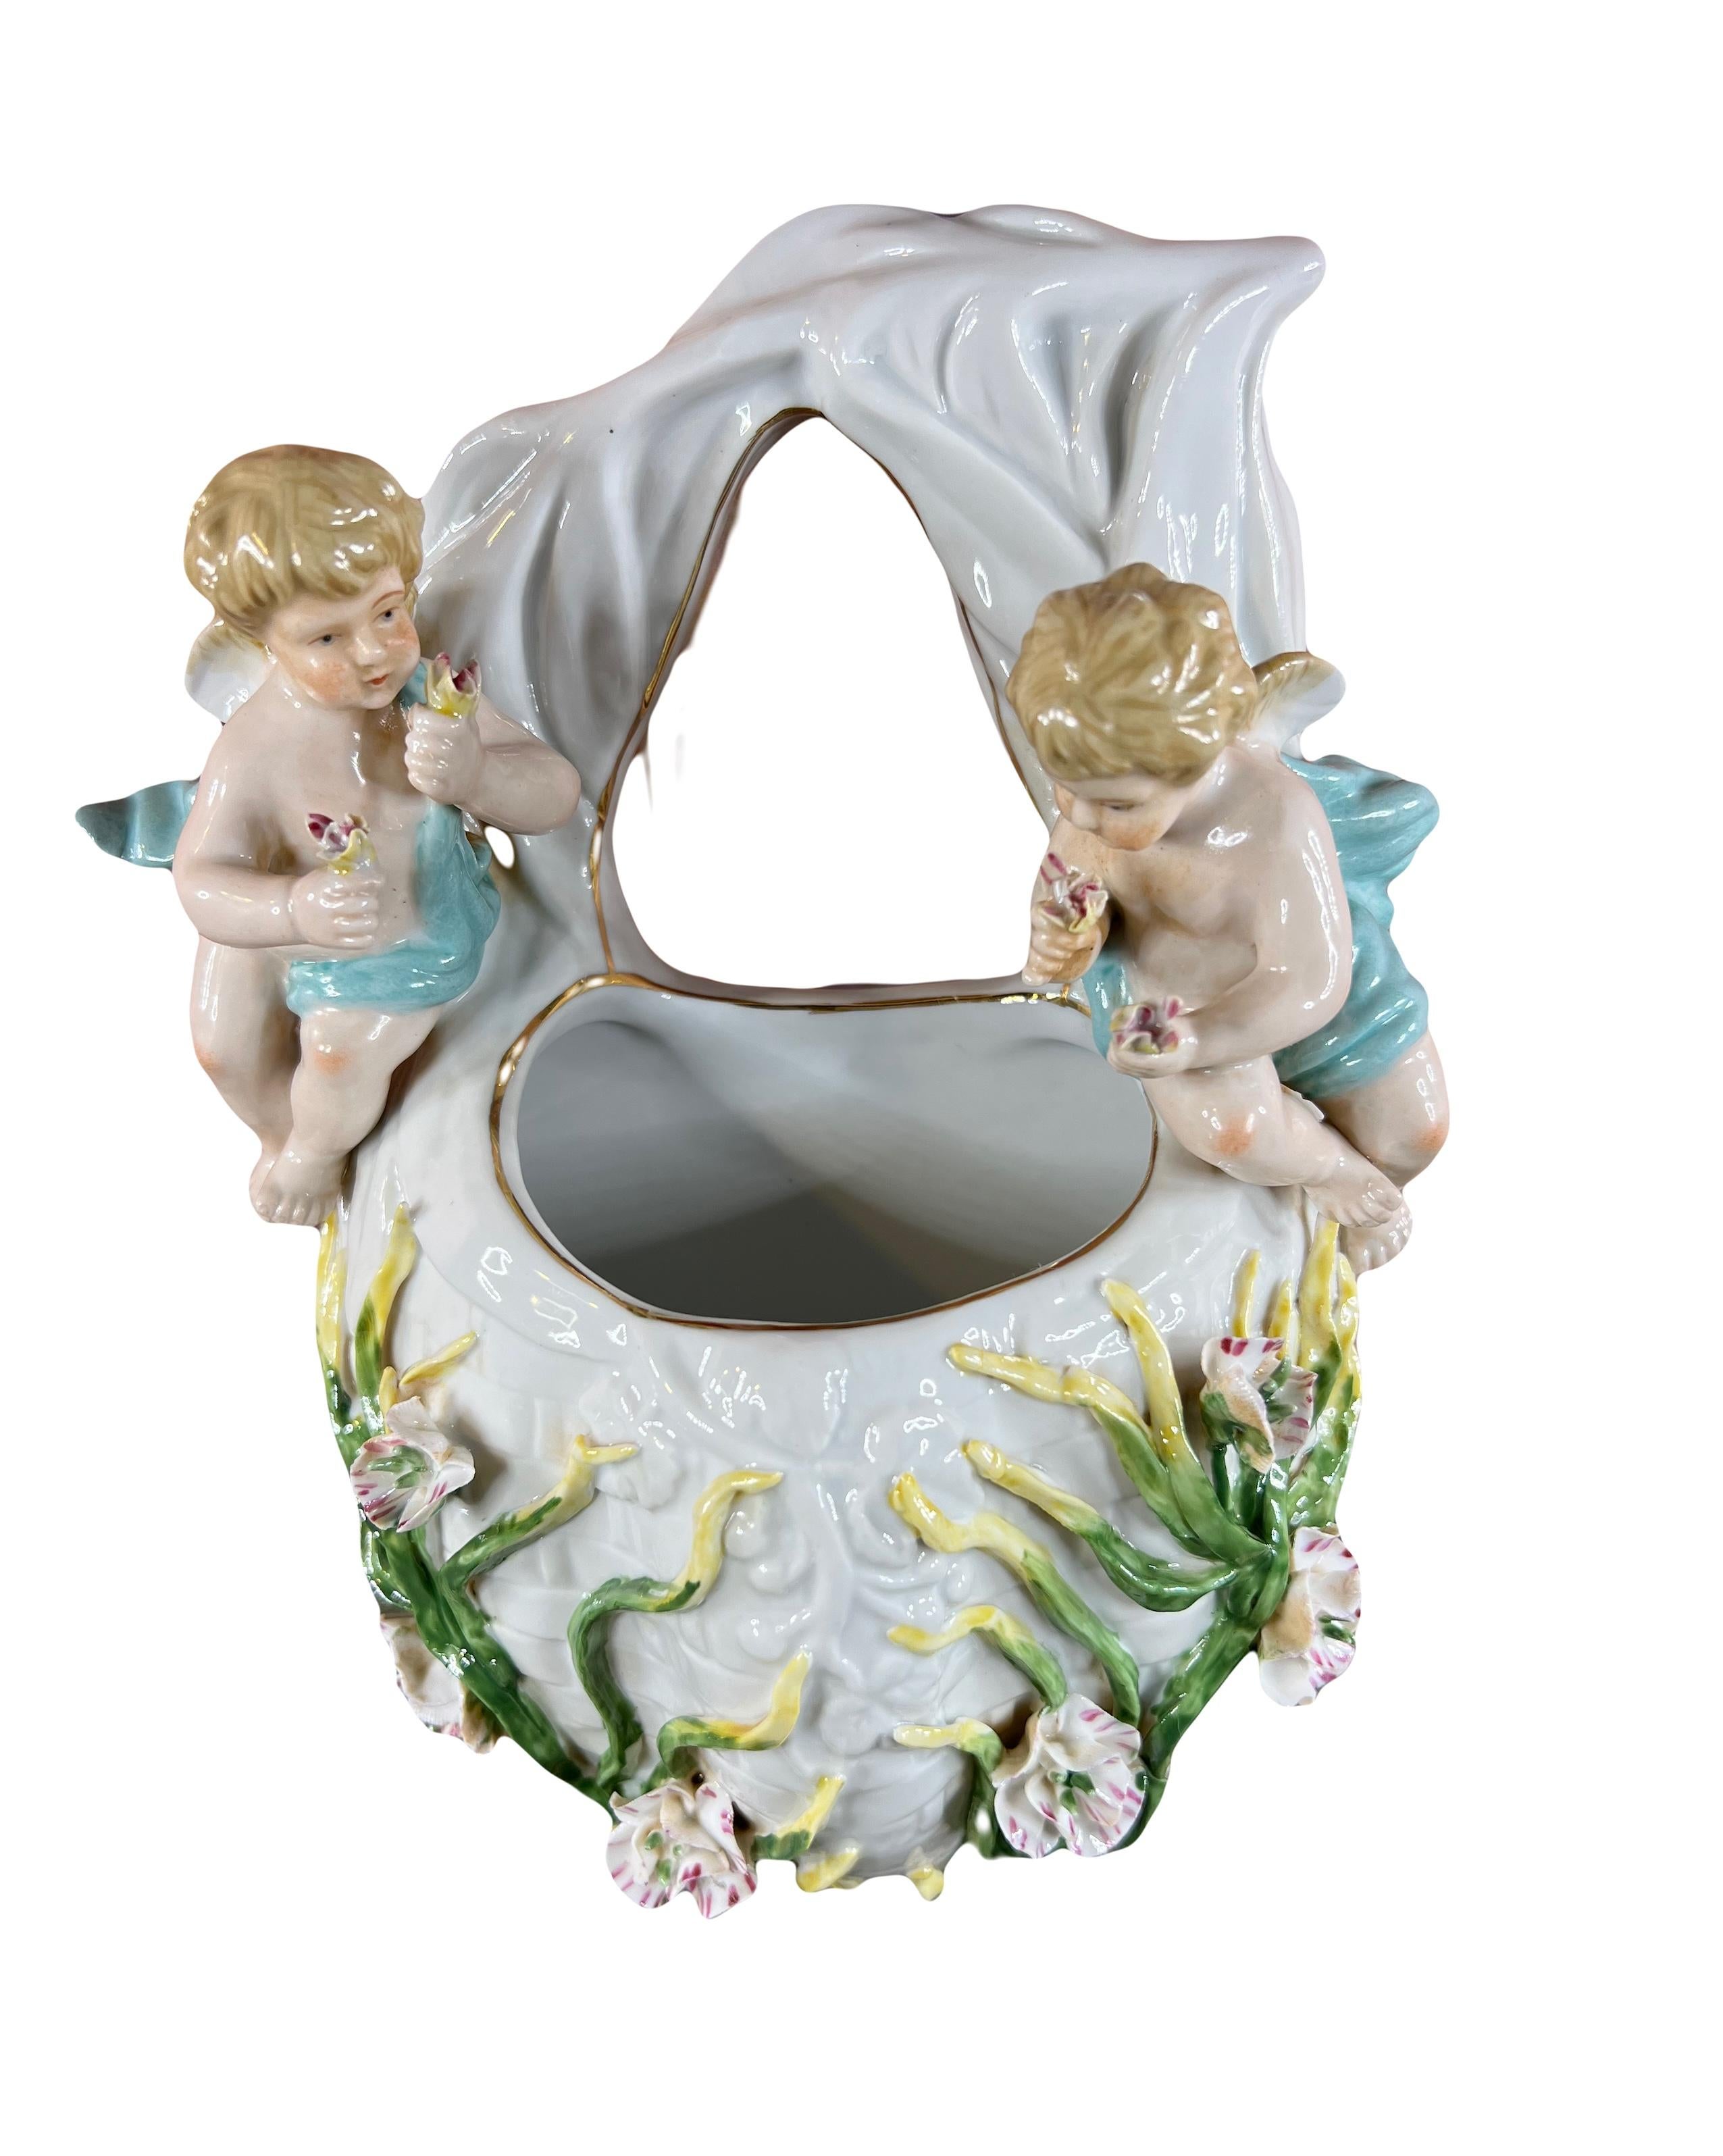 Cette magnifique pièce de décoration murale présente un vase d'applique ou bouquetière en porcelaine de Meissen. Deux charmants chérubins tiennent des bouquets de fleurs délicates dans leurs mains, ajoutant une touche angélique à l'ensemble. Ils